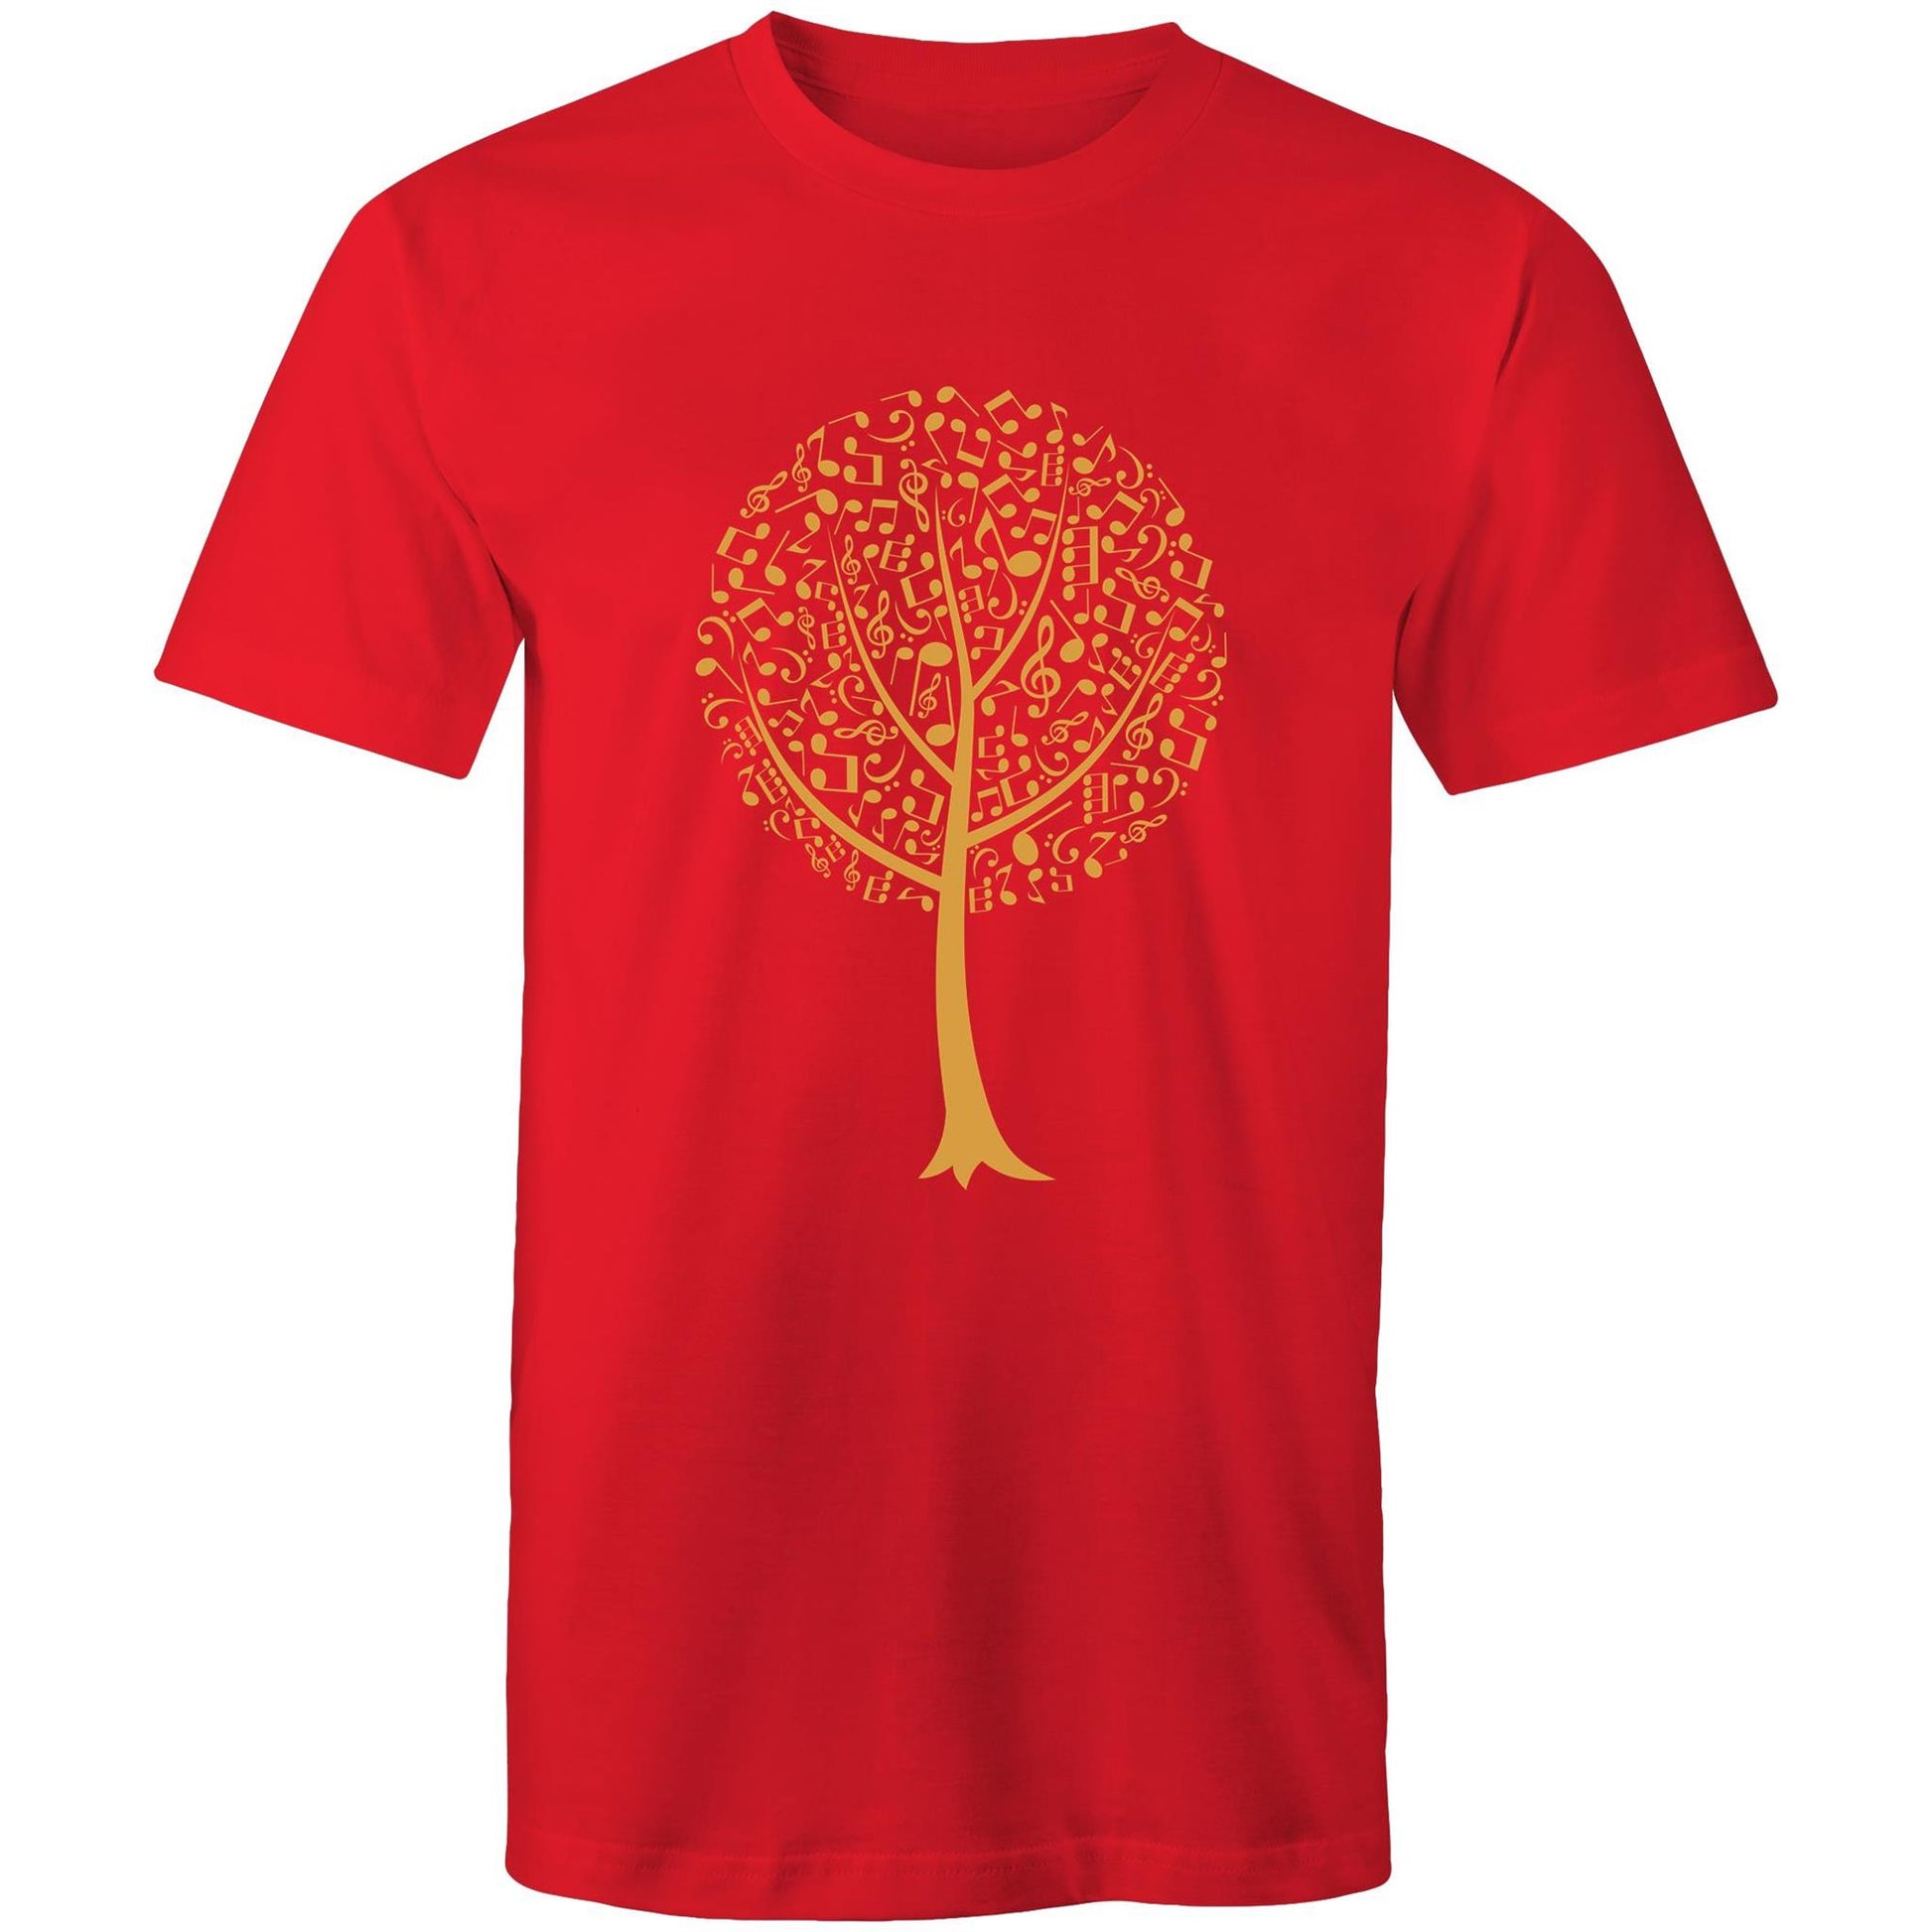 Music Tree - Mens T-Shirt Red Mens T-shirt Mens Music Plants